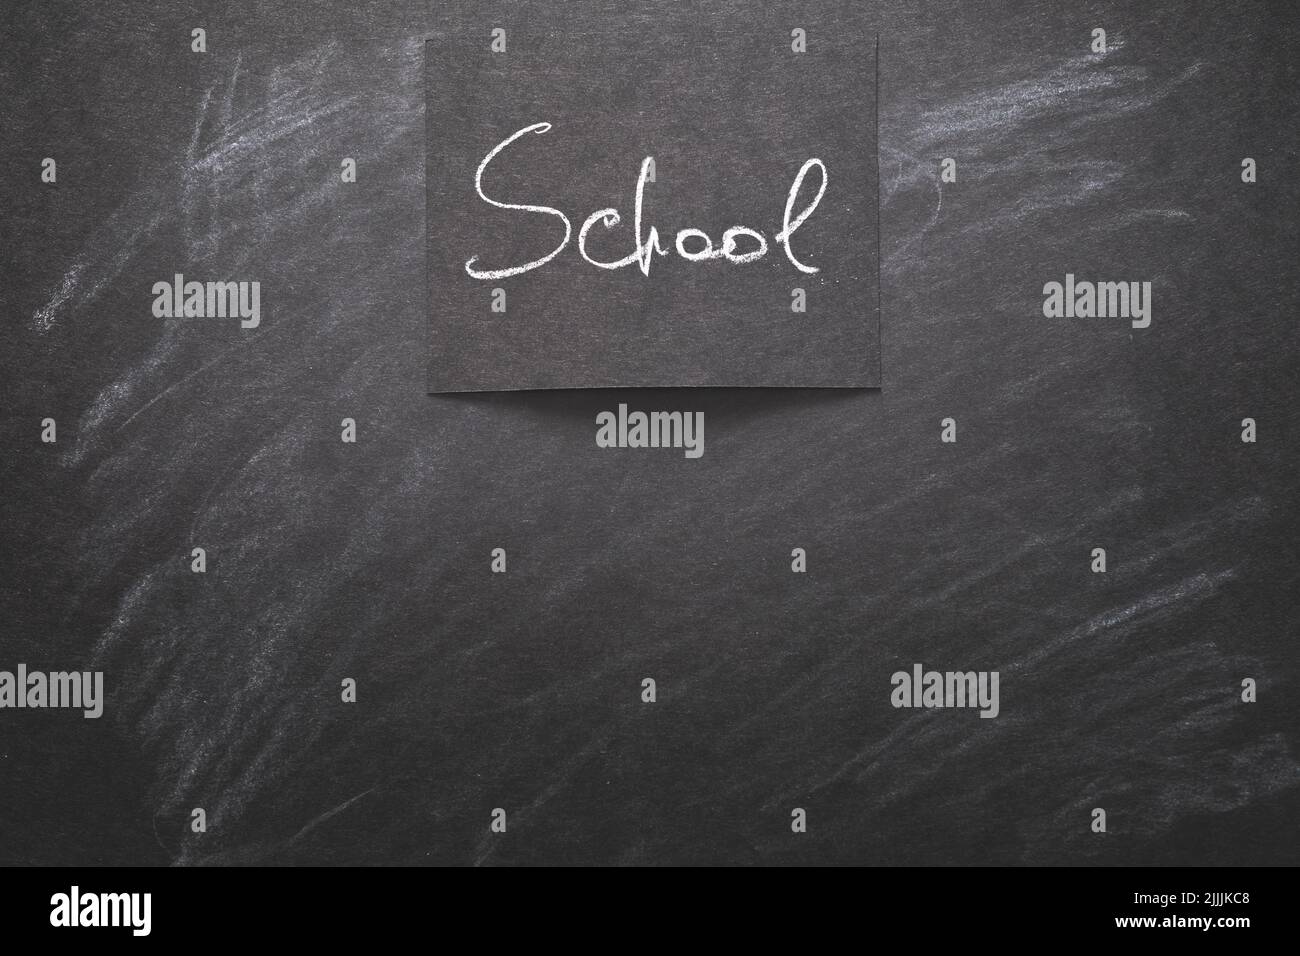 school written black chalkboard education study Stock Photo